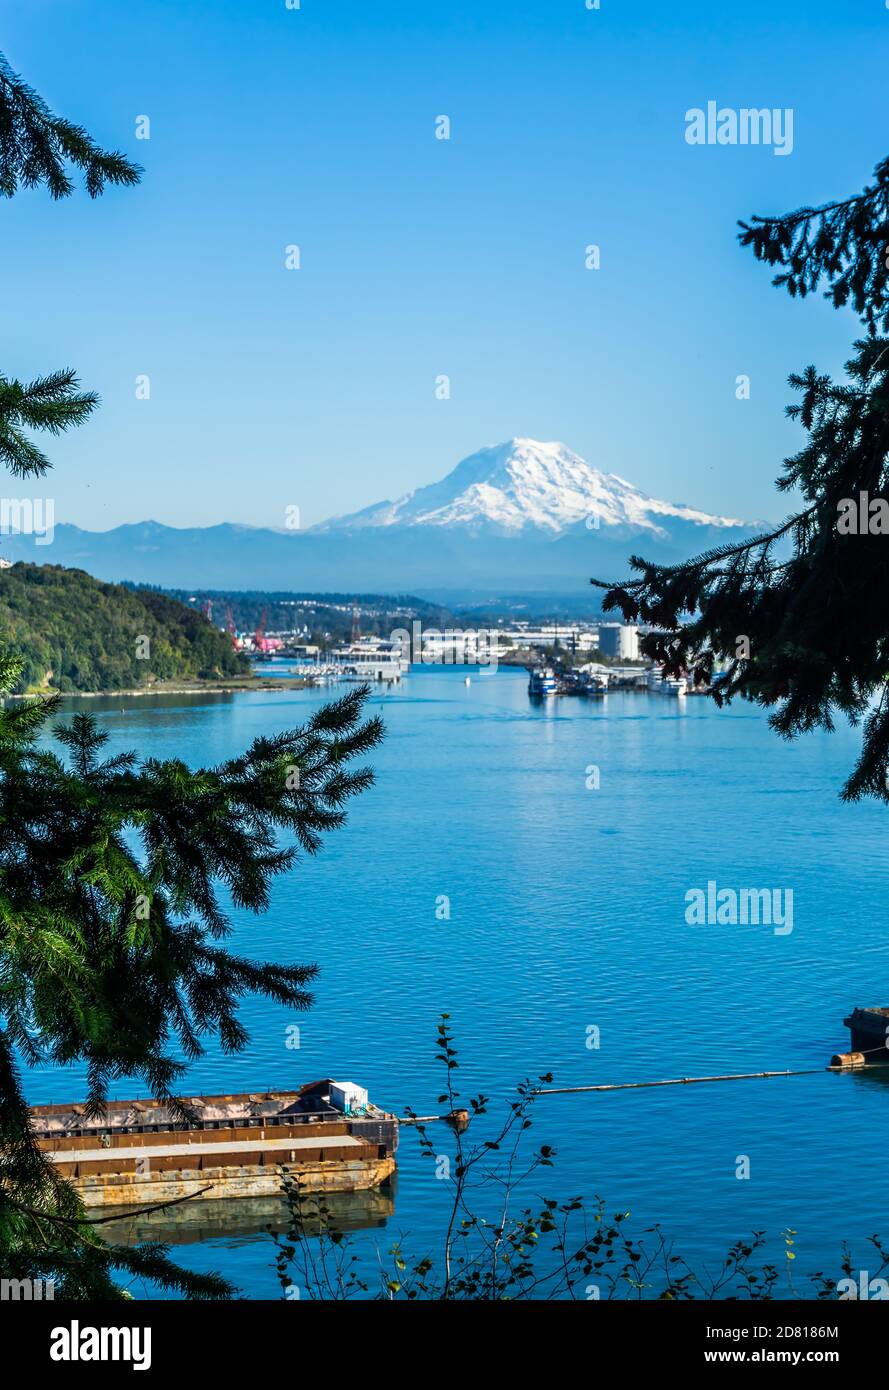 Eine Illustration des Hafens von Tacoma und des Mount Rainier. Stockfoto